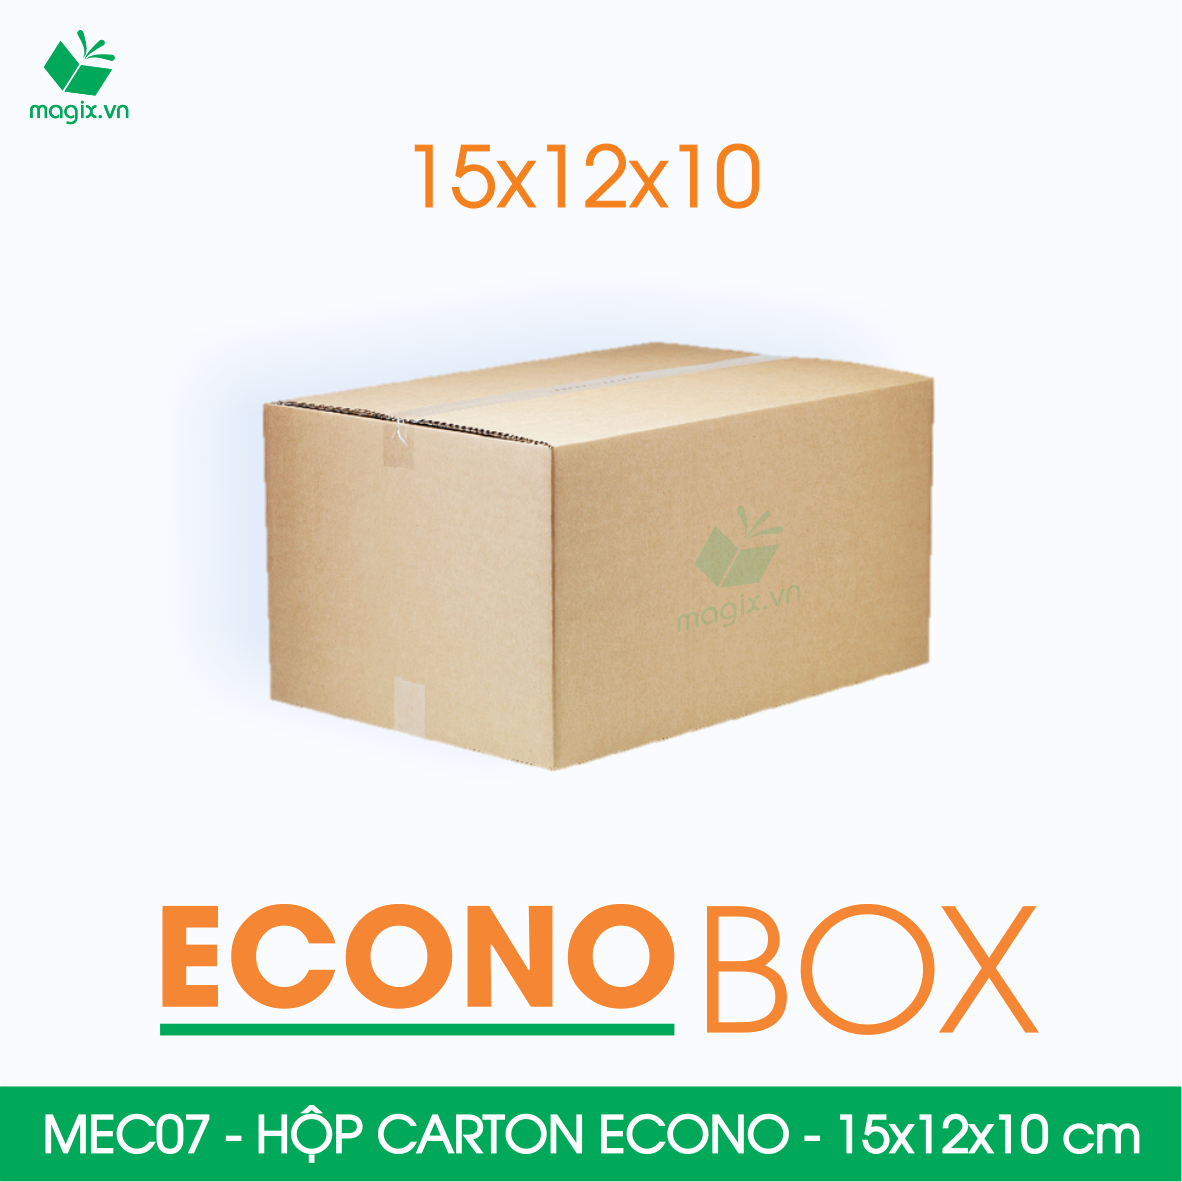 MEC07 - 15x12x10 cm - Combo 20 thùng hộp carton trơn siêu tiết kiệm ECONO